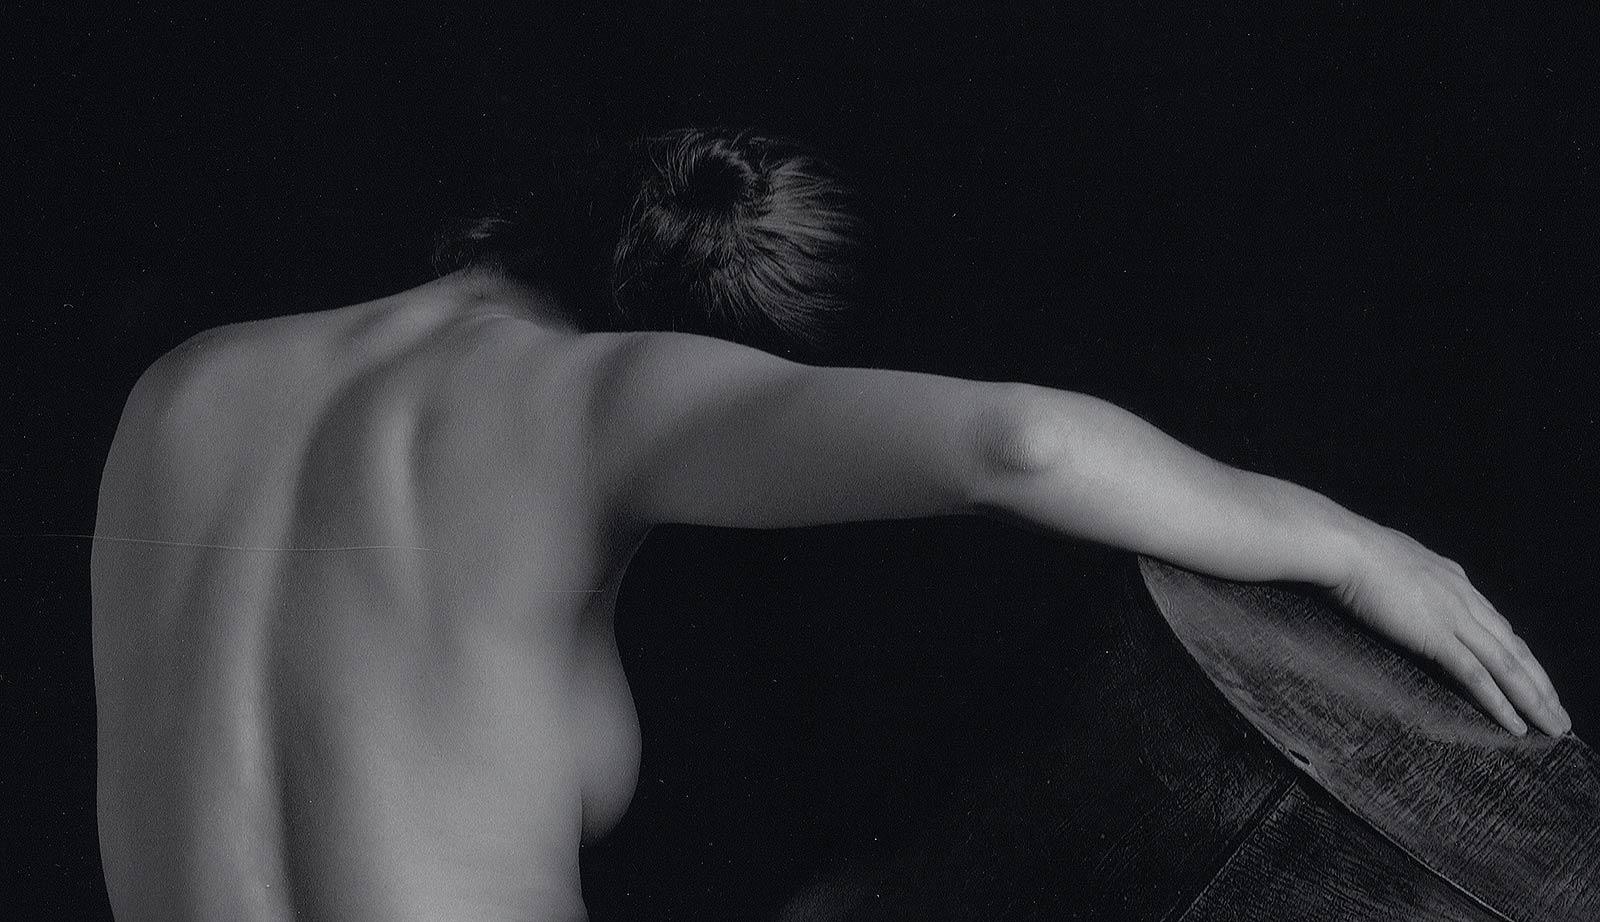 Akt mit Zinkgefäß (Rückenblick auf eine nackte Frau, die ein Zinkobjekt in der Hand hält) – Photograph von Eric Kellerman (b. 1944)